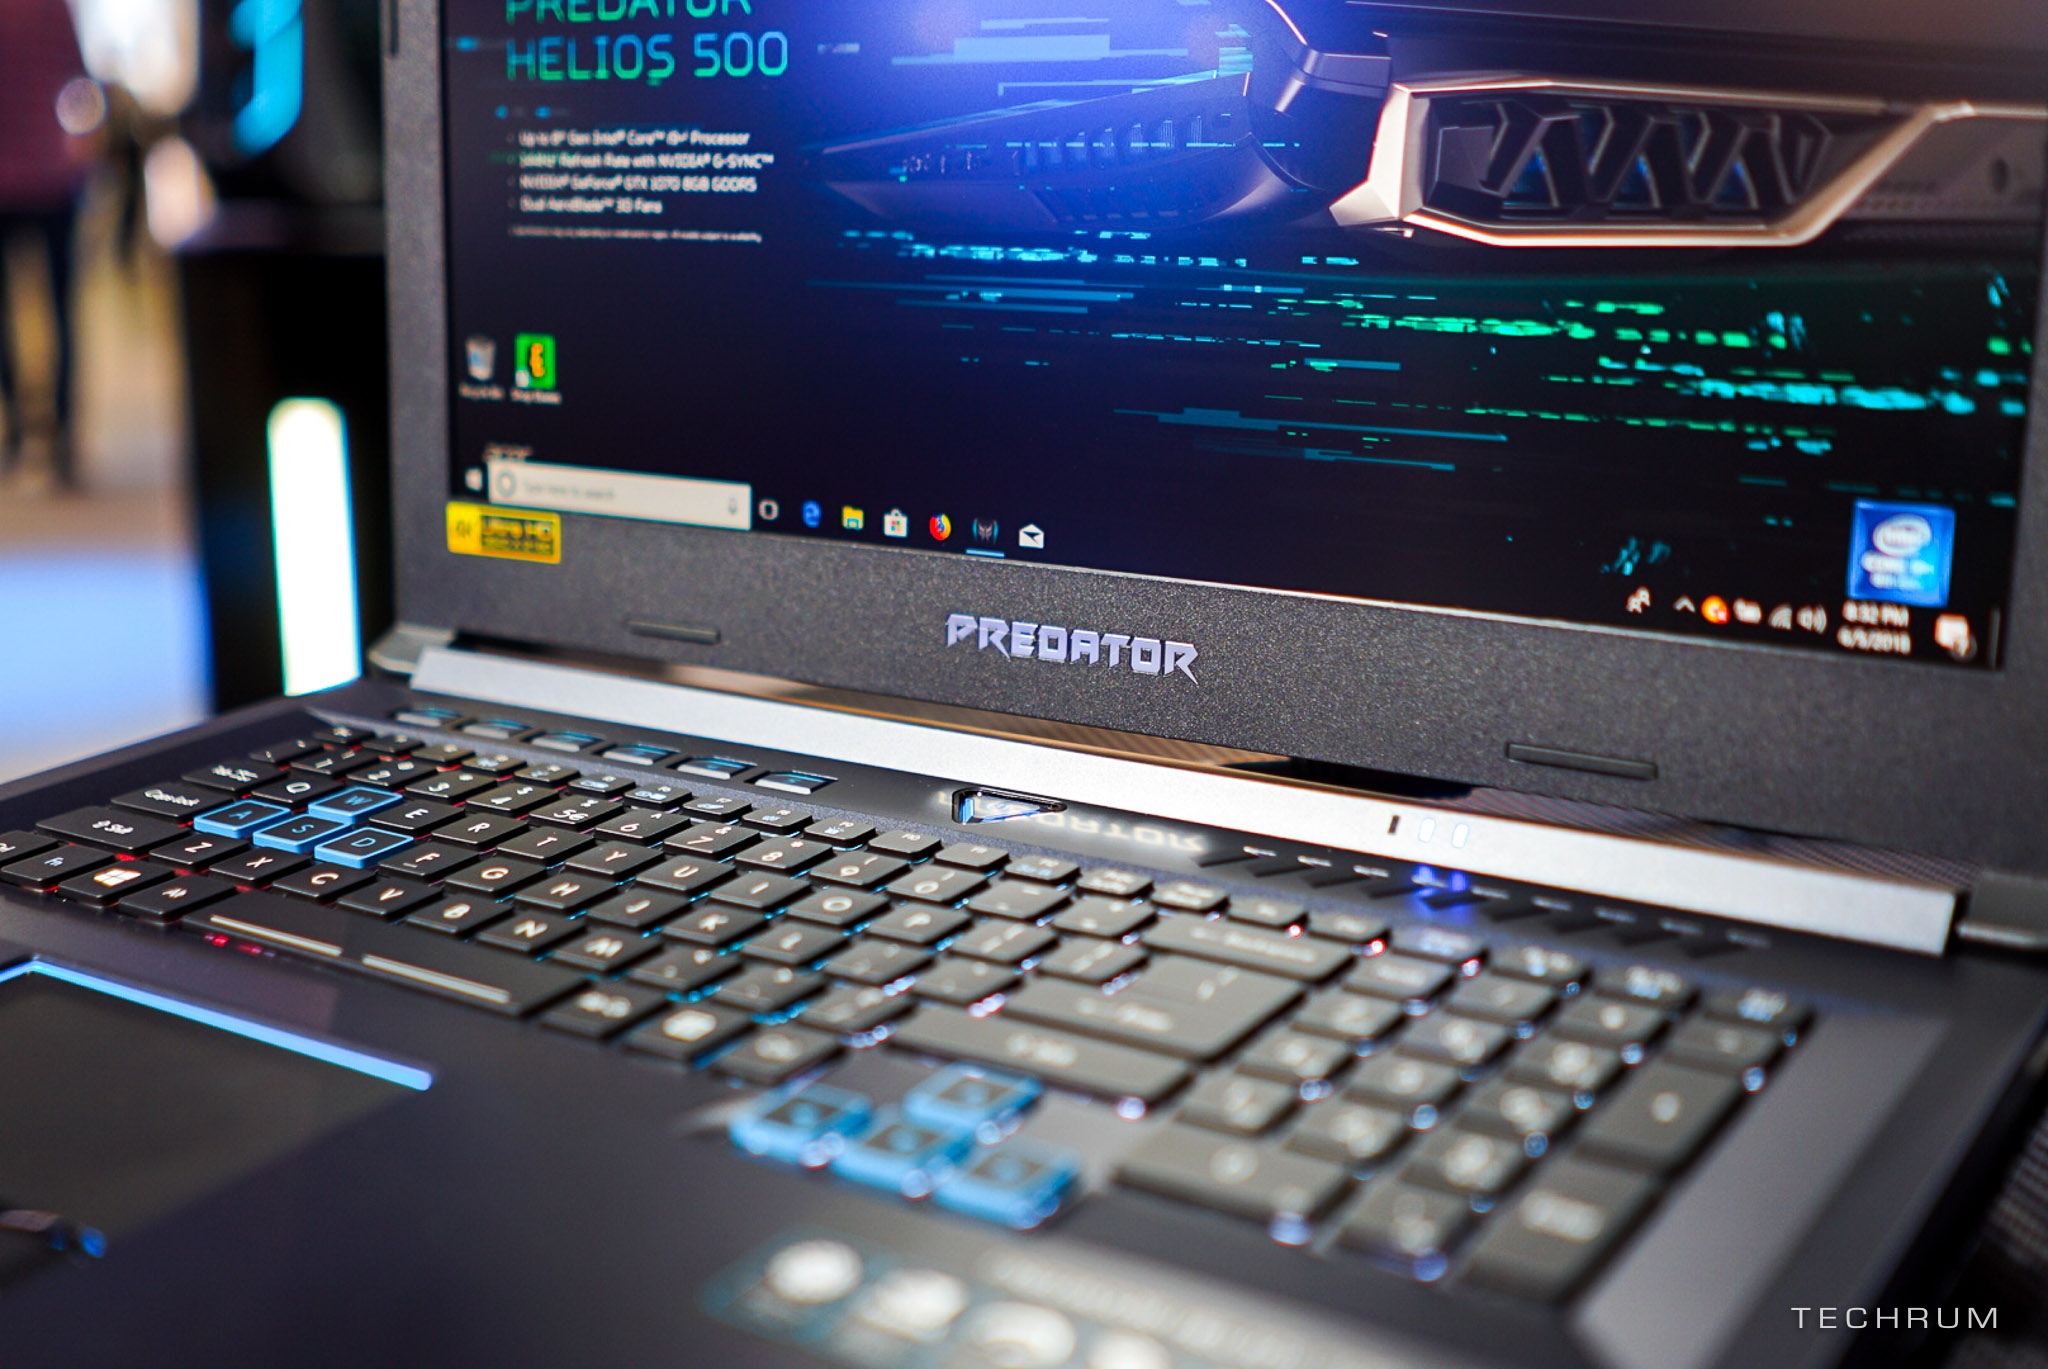 [Computex 2018] Cận
cảnh bộ đôi gaming laptop Predator Helios 500 & Helios
300 cấu hình khủng của Acer